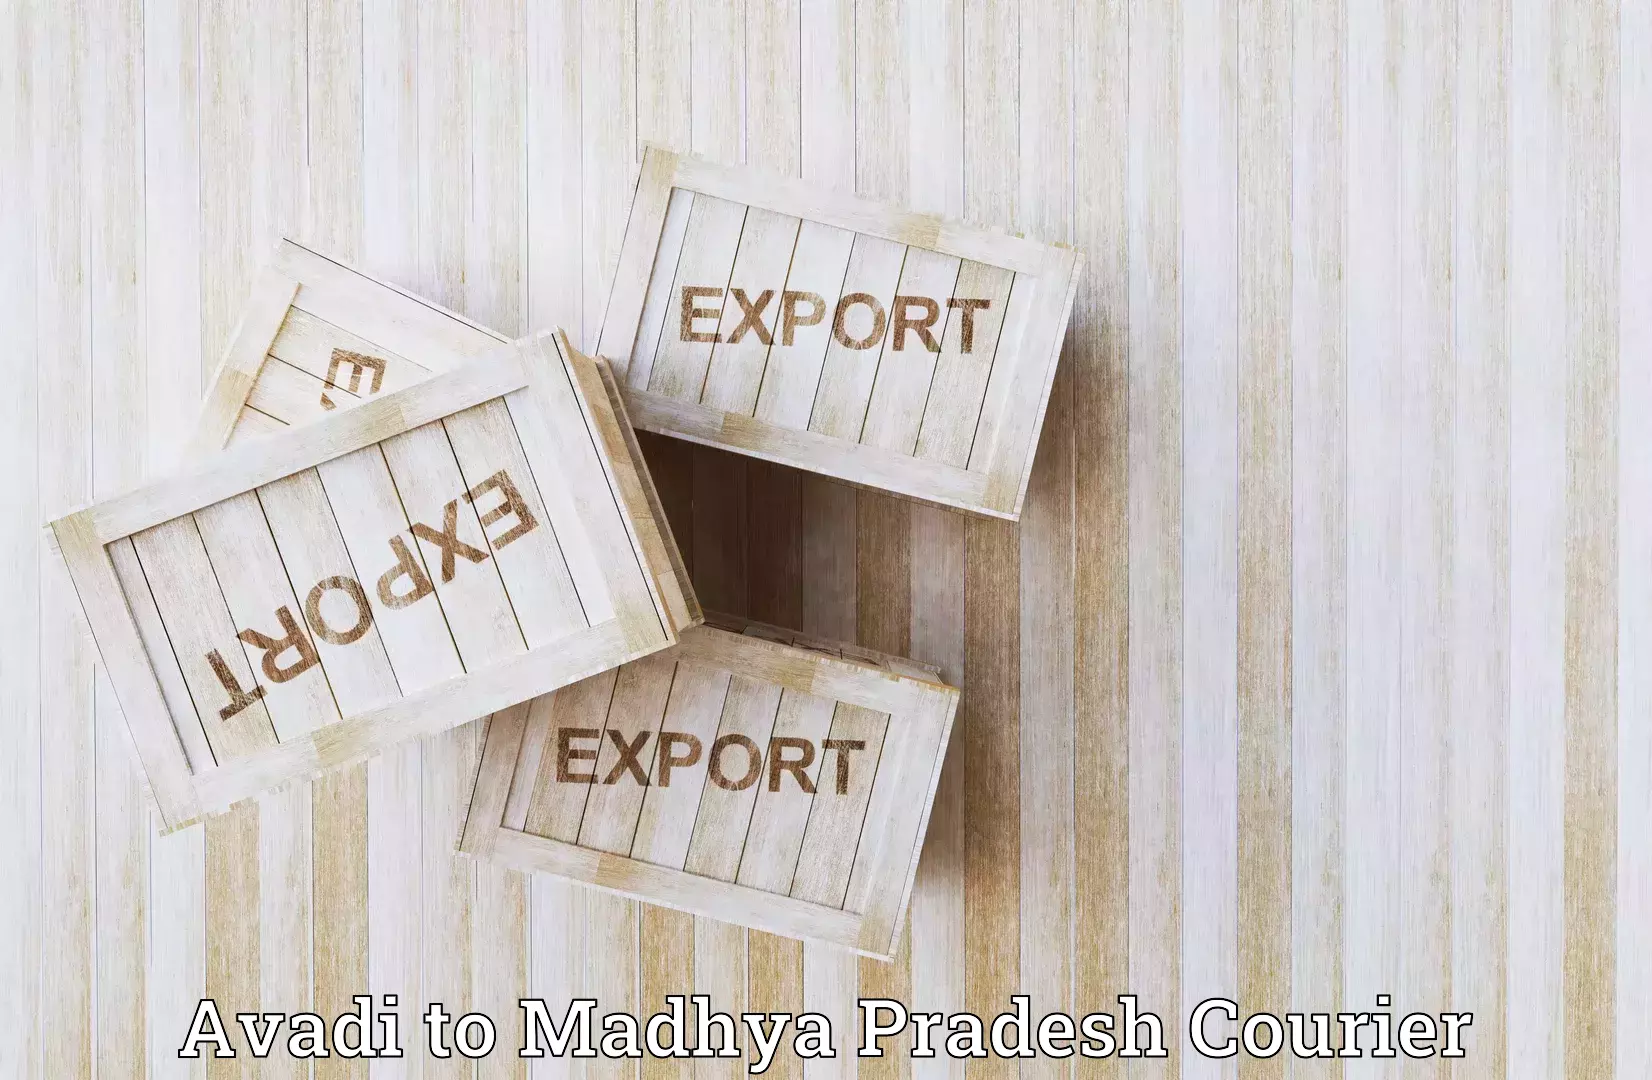 Global parcel delivery Avadi to Raipur Karchuliyan